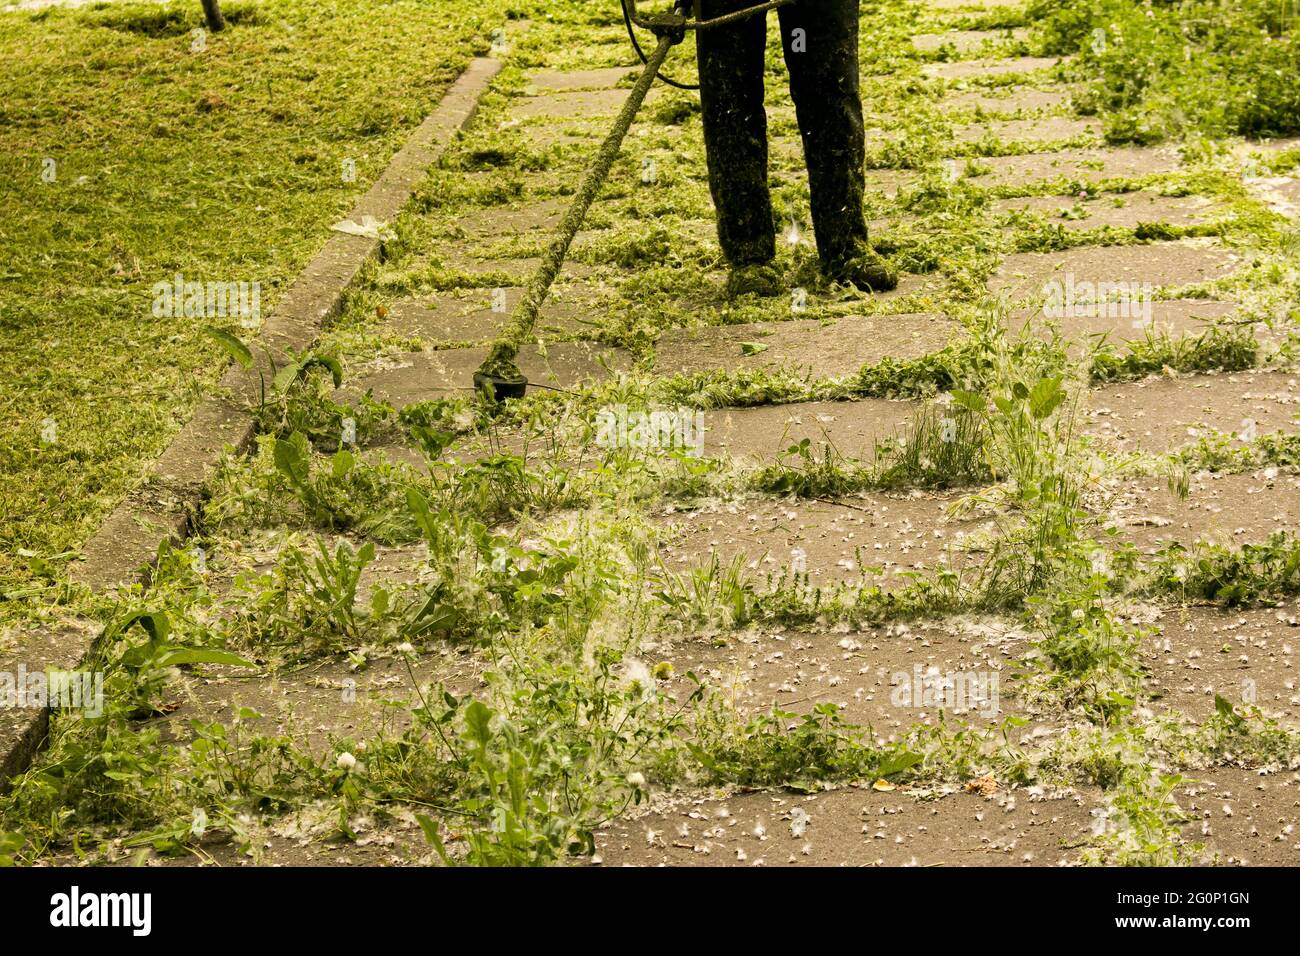 Trabajos de verano en el parque. El jardinero está cortando la hierba. Un hombre utiliza un cortapatillas para césped sin cubierta protectora. Foto de stock